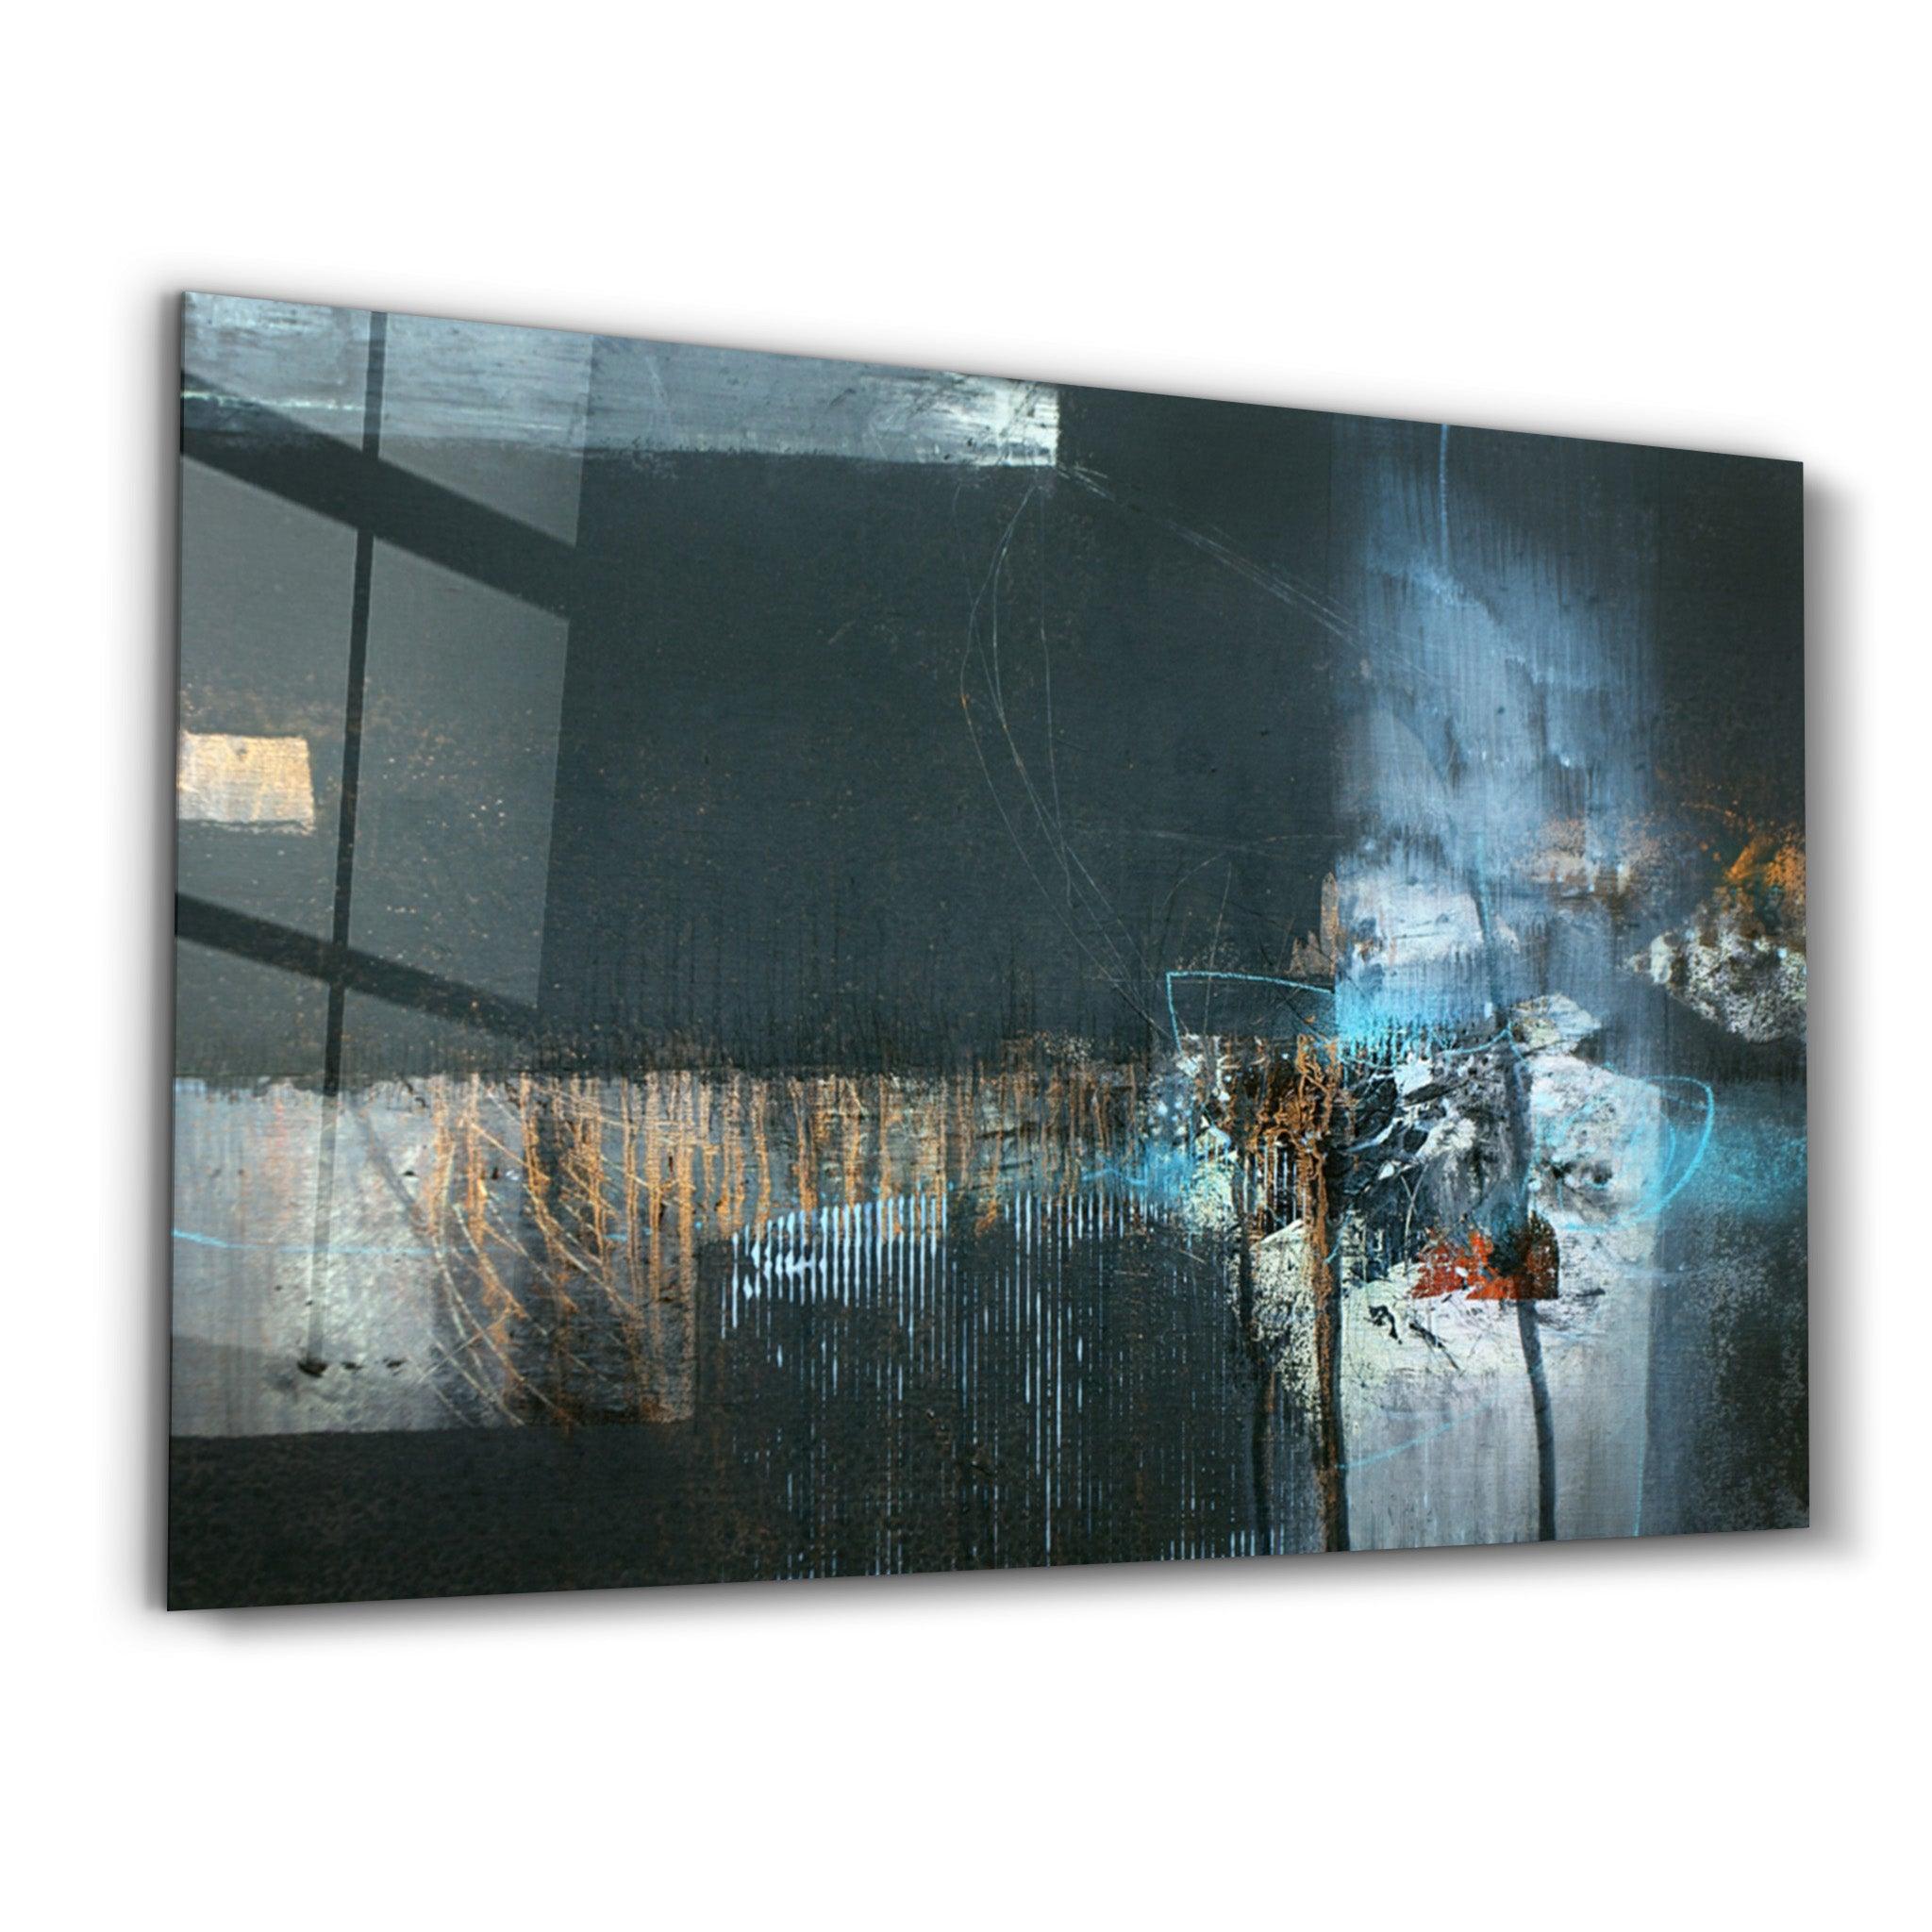 The Real Abstract | Glass Wall Art - ArtDesigna Glass Printing Wall Art